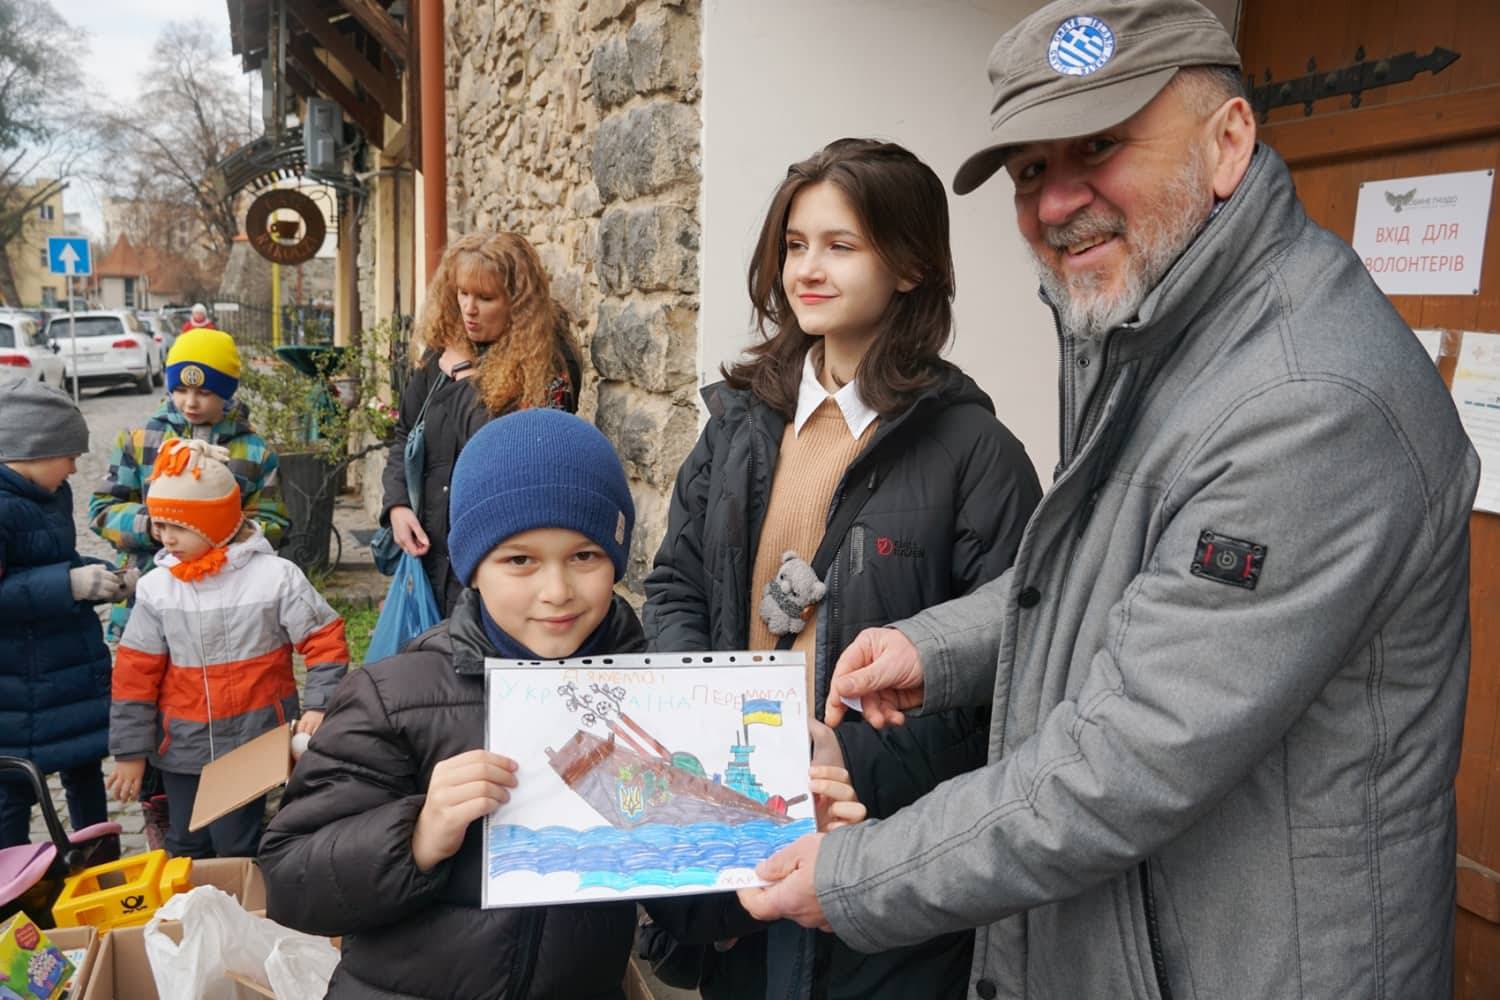 Допомога переселенцям в Ужгороді: волонтери «Совиного» продовжують благодійну діяльність